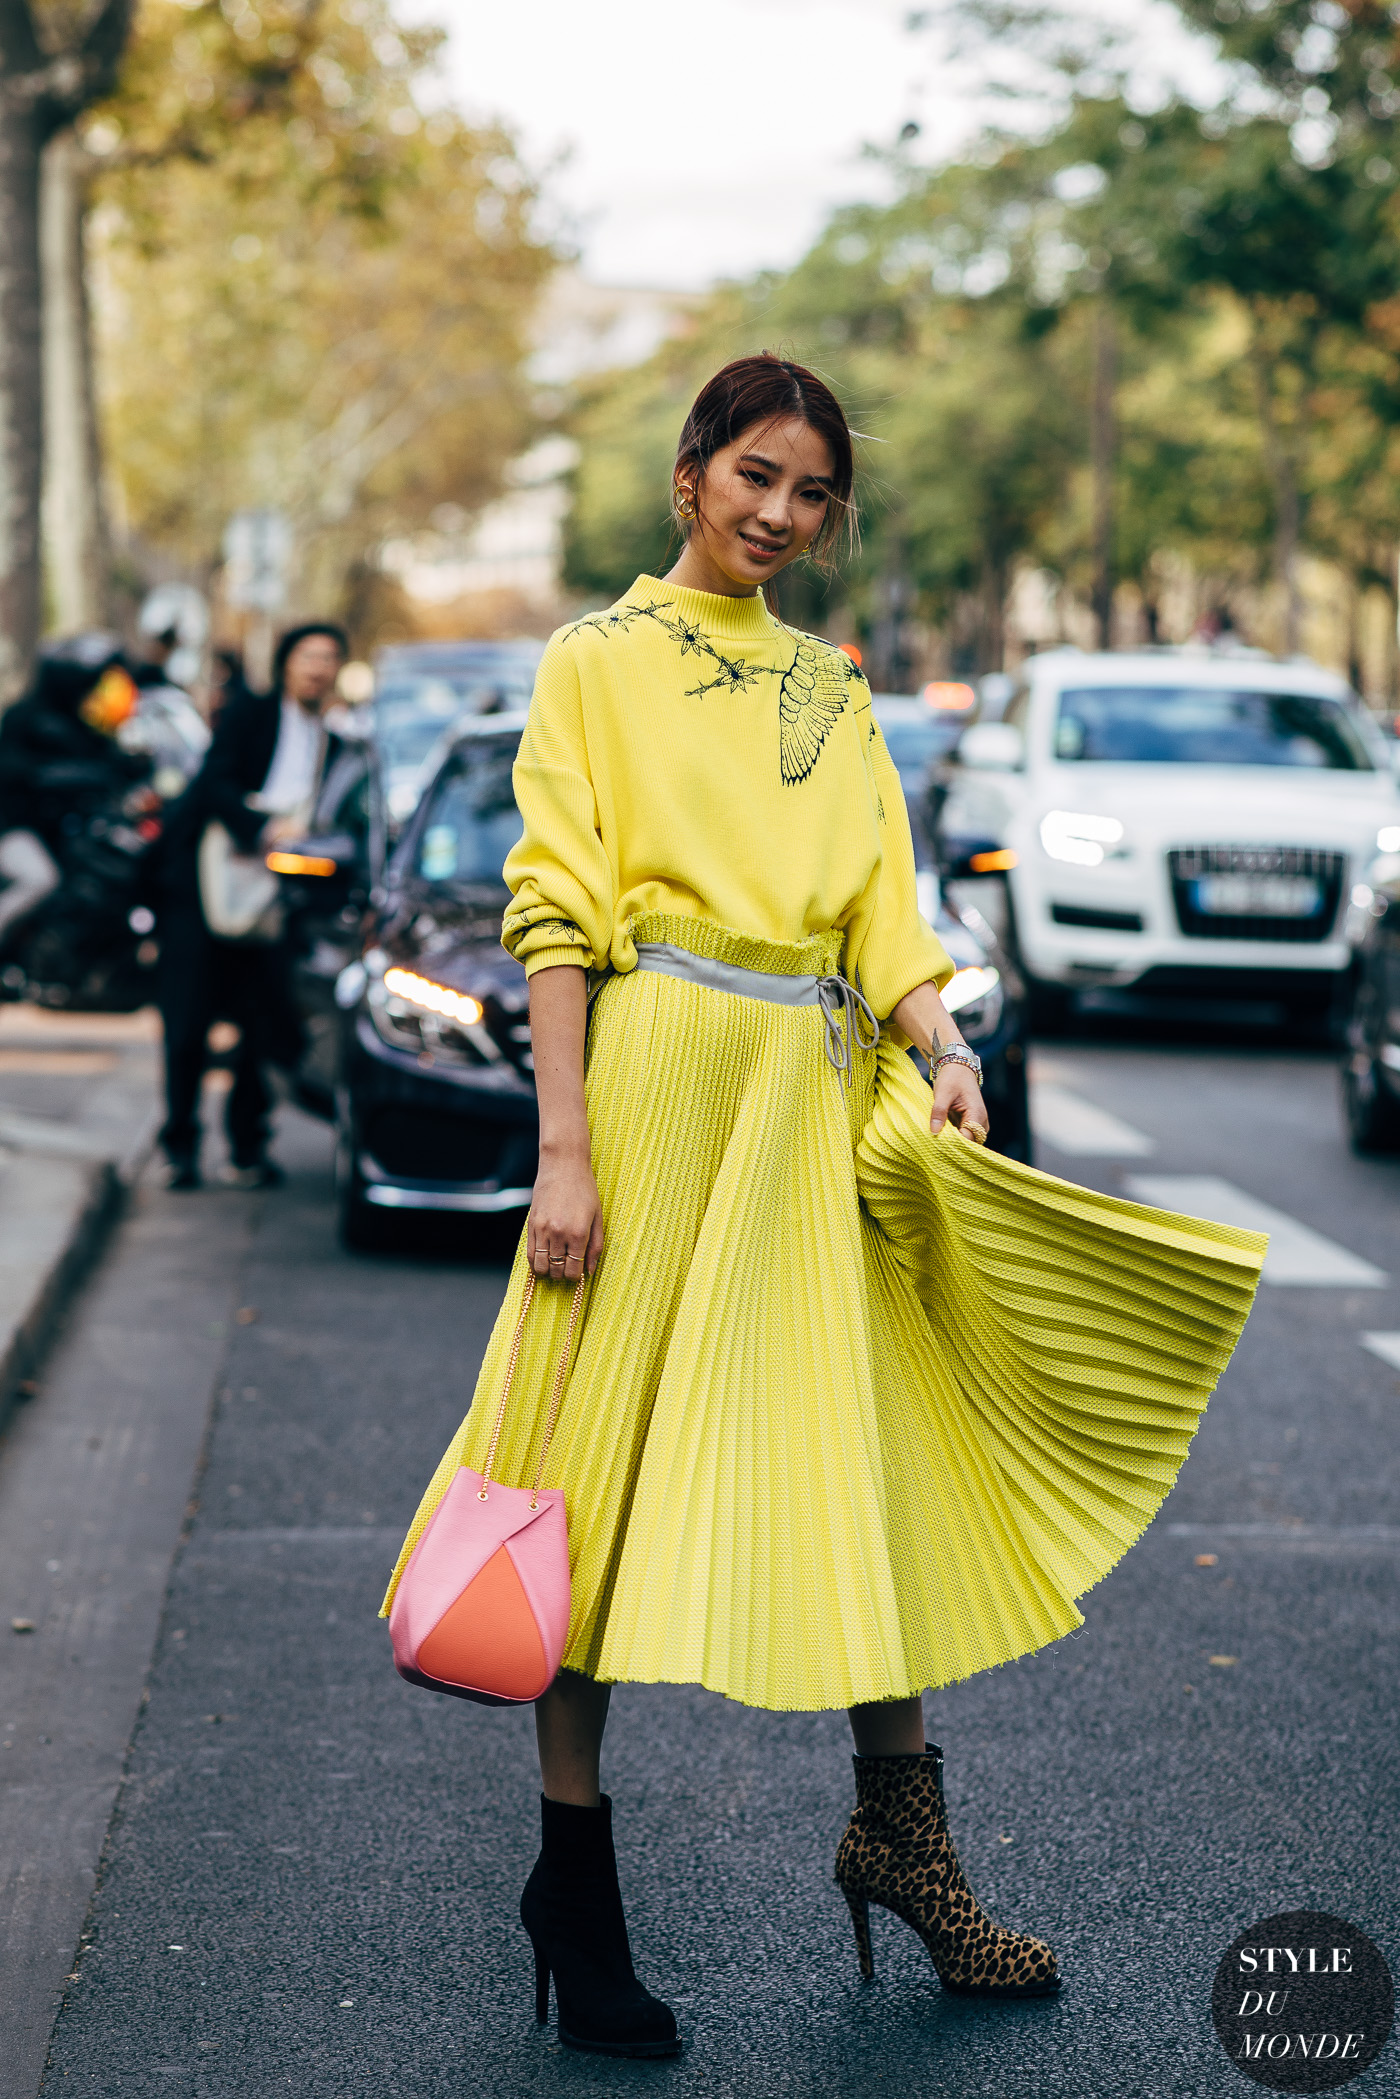 Paris SS 2019 Street Style: Irene Kim - STYLE DU MONDE | Street Style ...